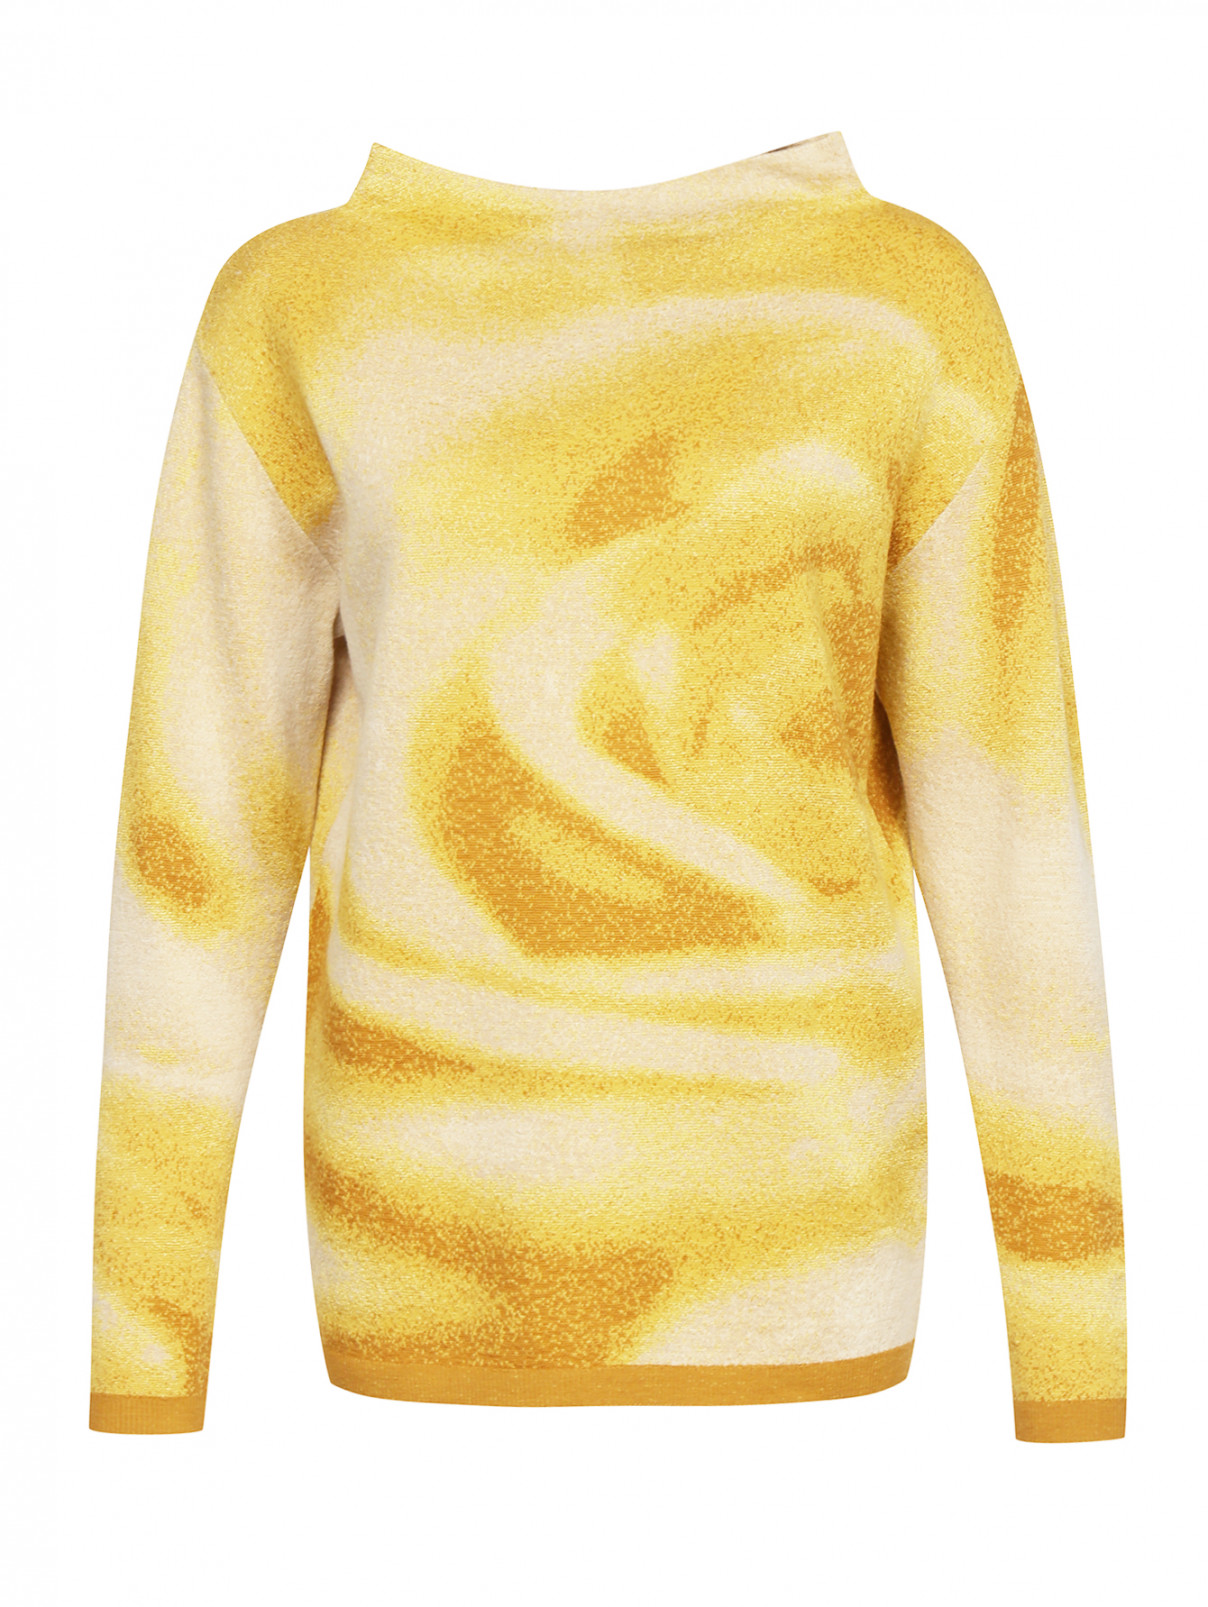 Джемпер из шерсти и шелка с узором Max Mara  –  Общий вид  – Цвет:  Желтый